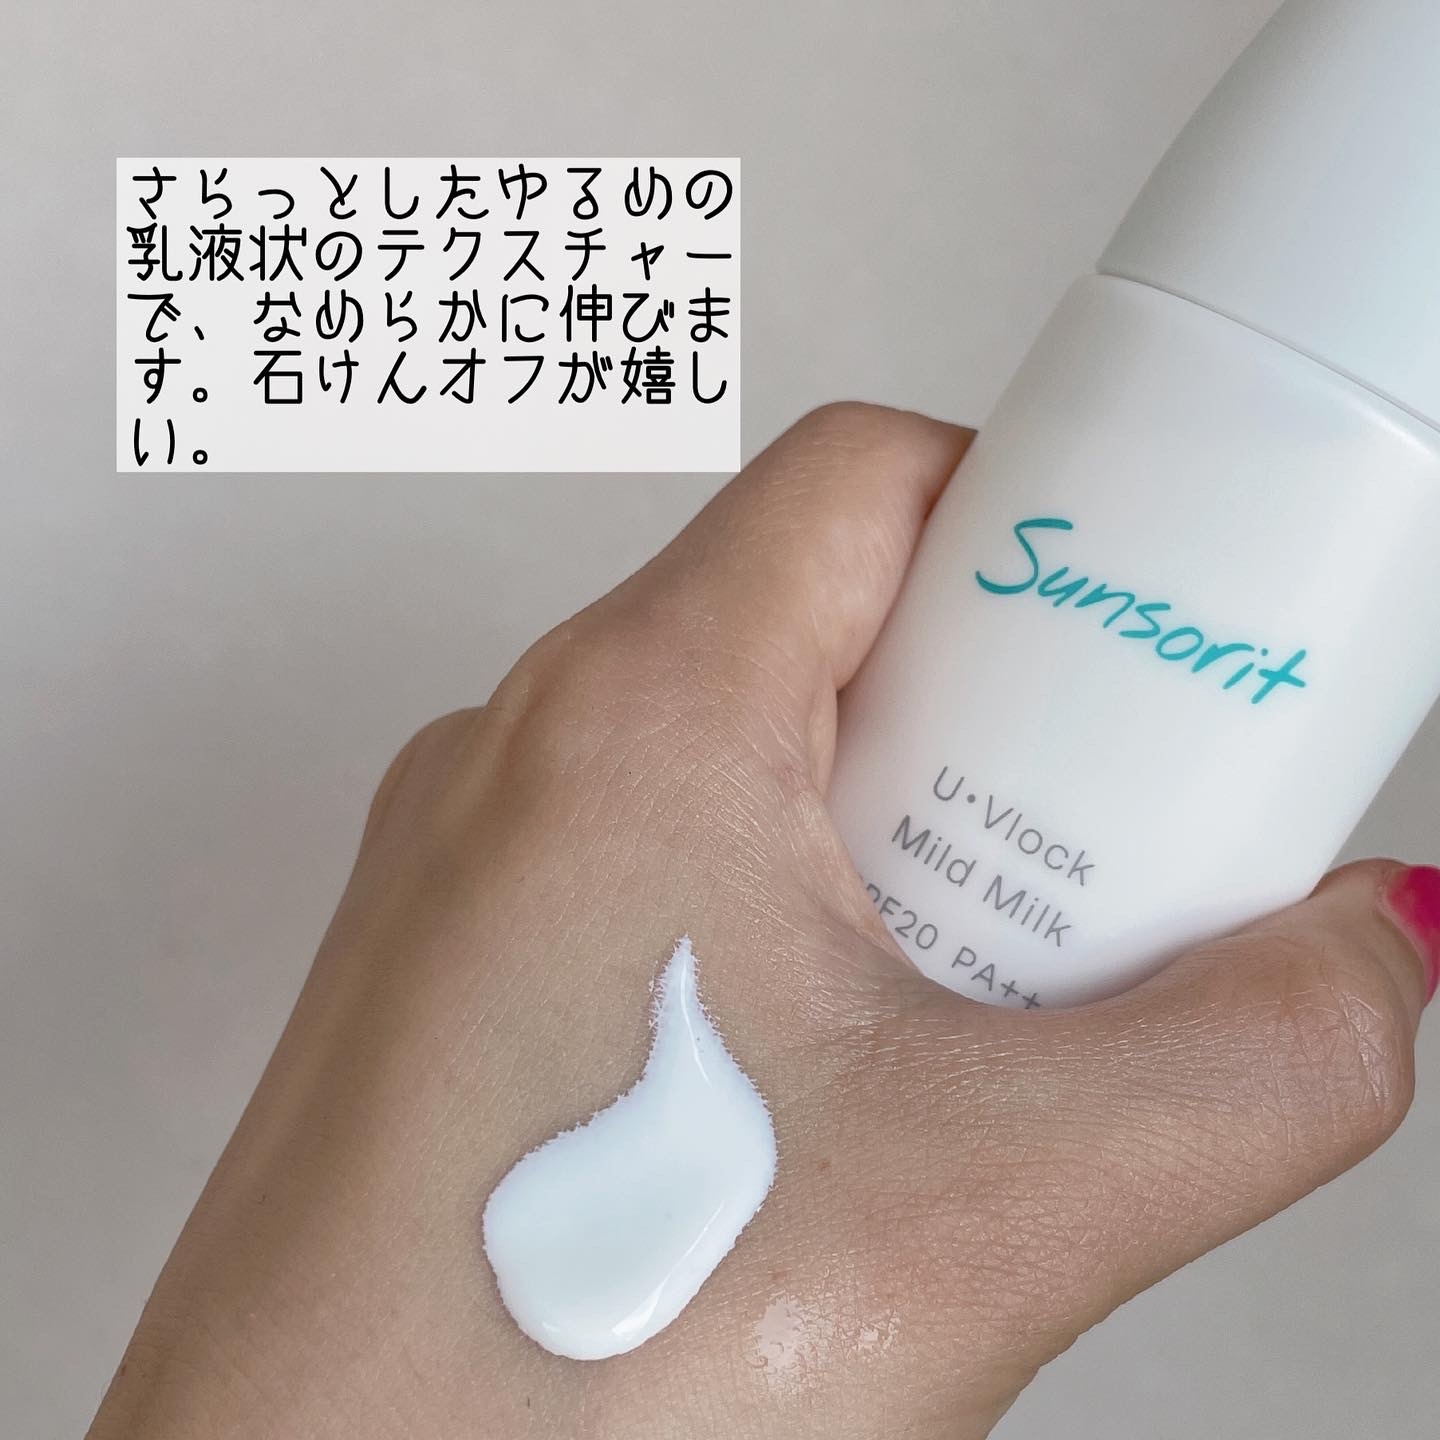 Sunsorit(サンソリット) U・Vlock マイルドミルクの良い点・メリットに関するなゆさんの口コミ画像2